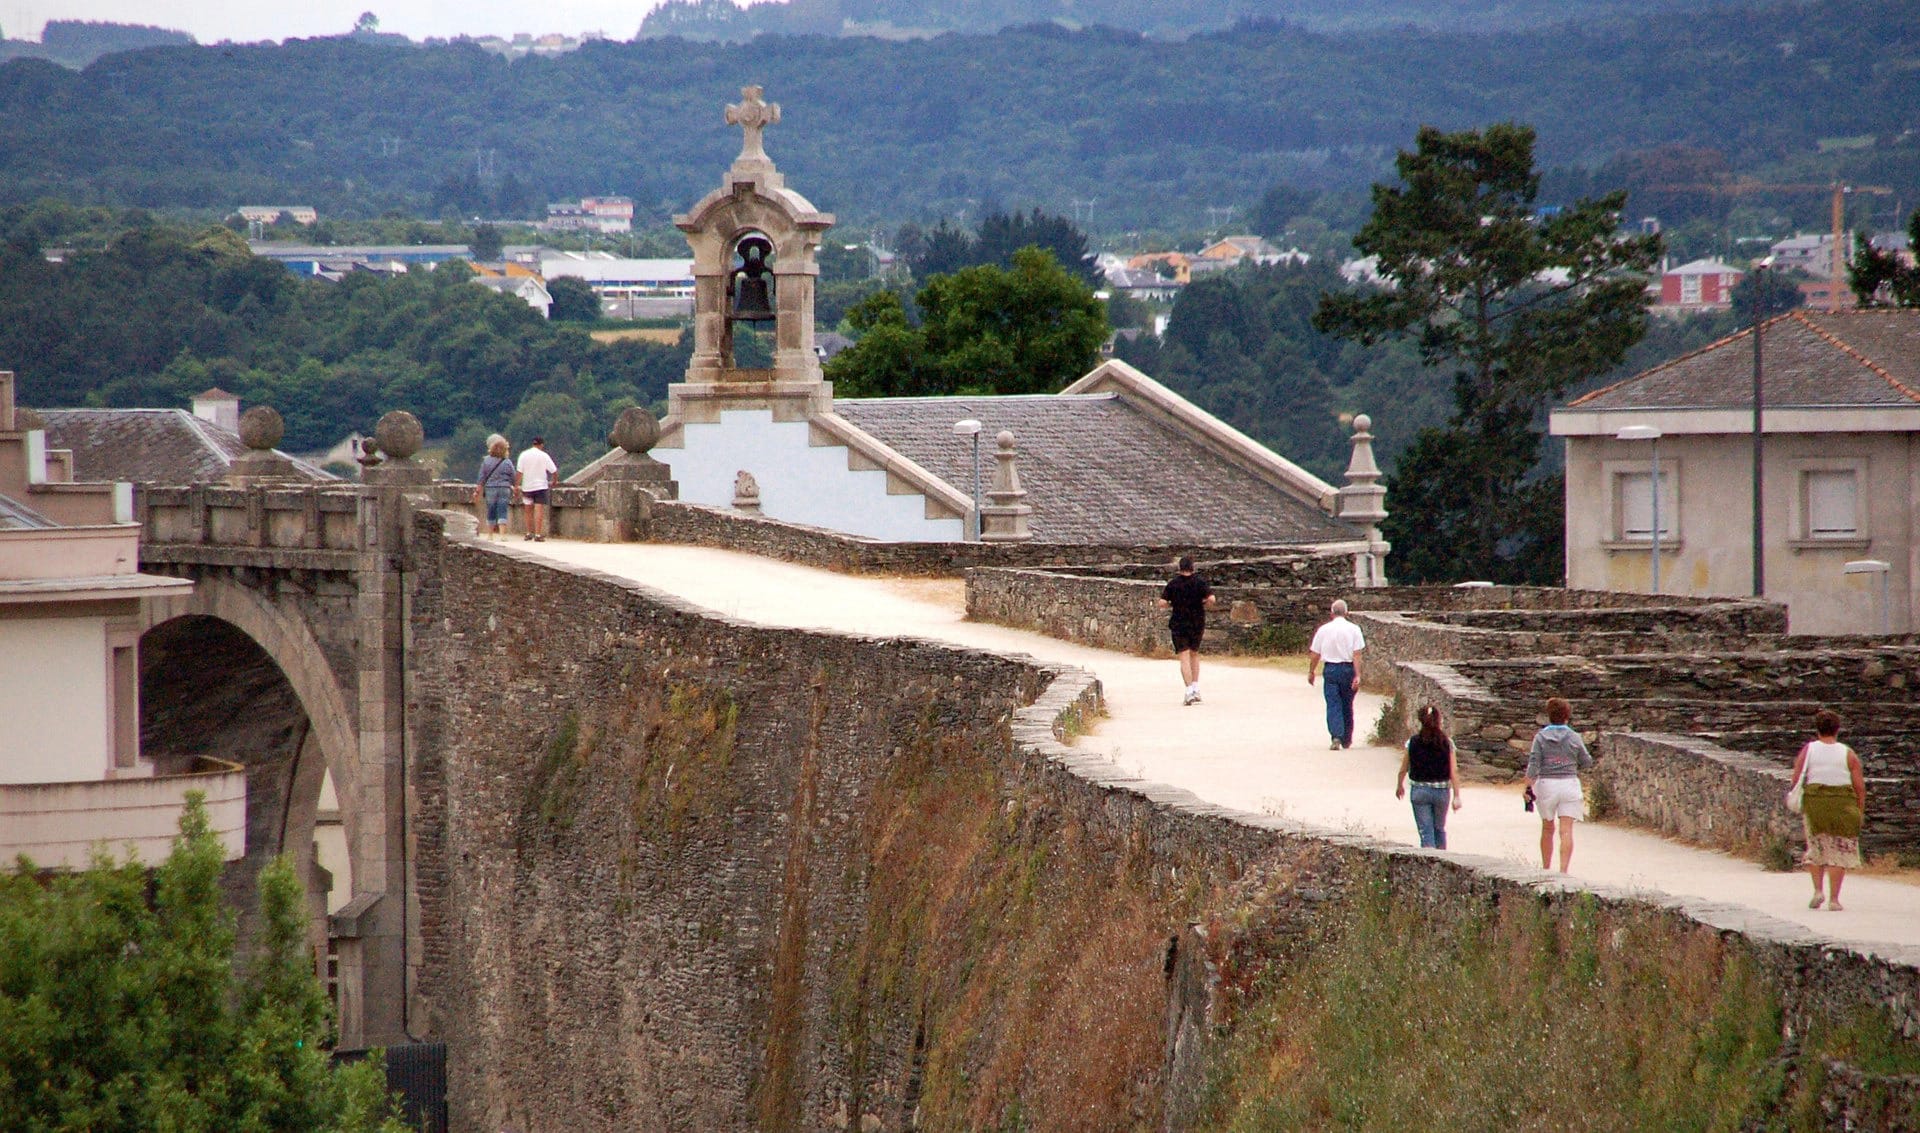 Tường thành La Mã ở Lugo là hệ thống tường thành được xây dựng trong thế kỷ thứ 3 và hầu như vẫn còn nguyên vẹn cho tới tận ngày nay. Hệ thống kéo dài trên 2 km xung quanh trung tâm lịch sử của Lugo ở Galicia. Các công sự và hệ thống tường thành của Lugo đã được ghi vào danh sách Di sản thế giới của UNESCO vào cuối năm 2000 với tính chất là một "ví dụ tốt nhất của pháo đài La mã ở Tây Âu".